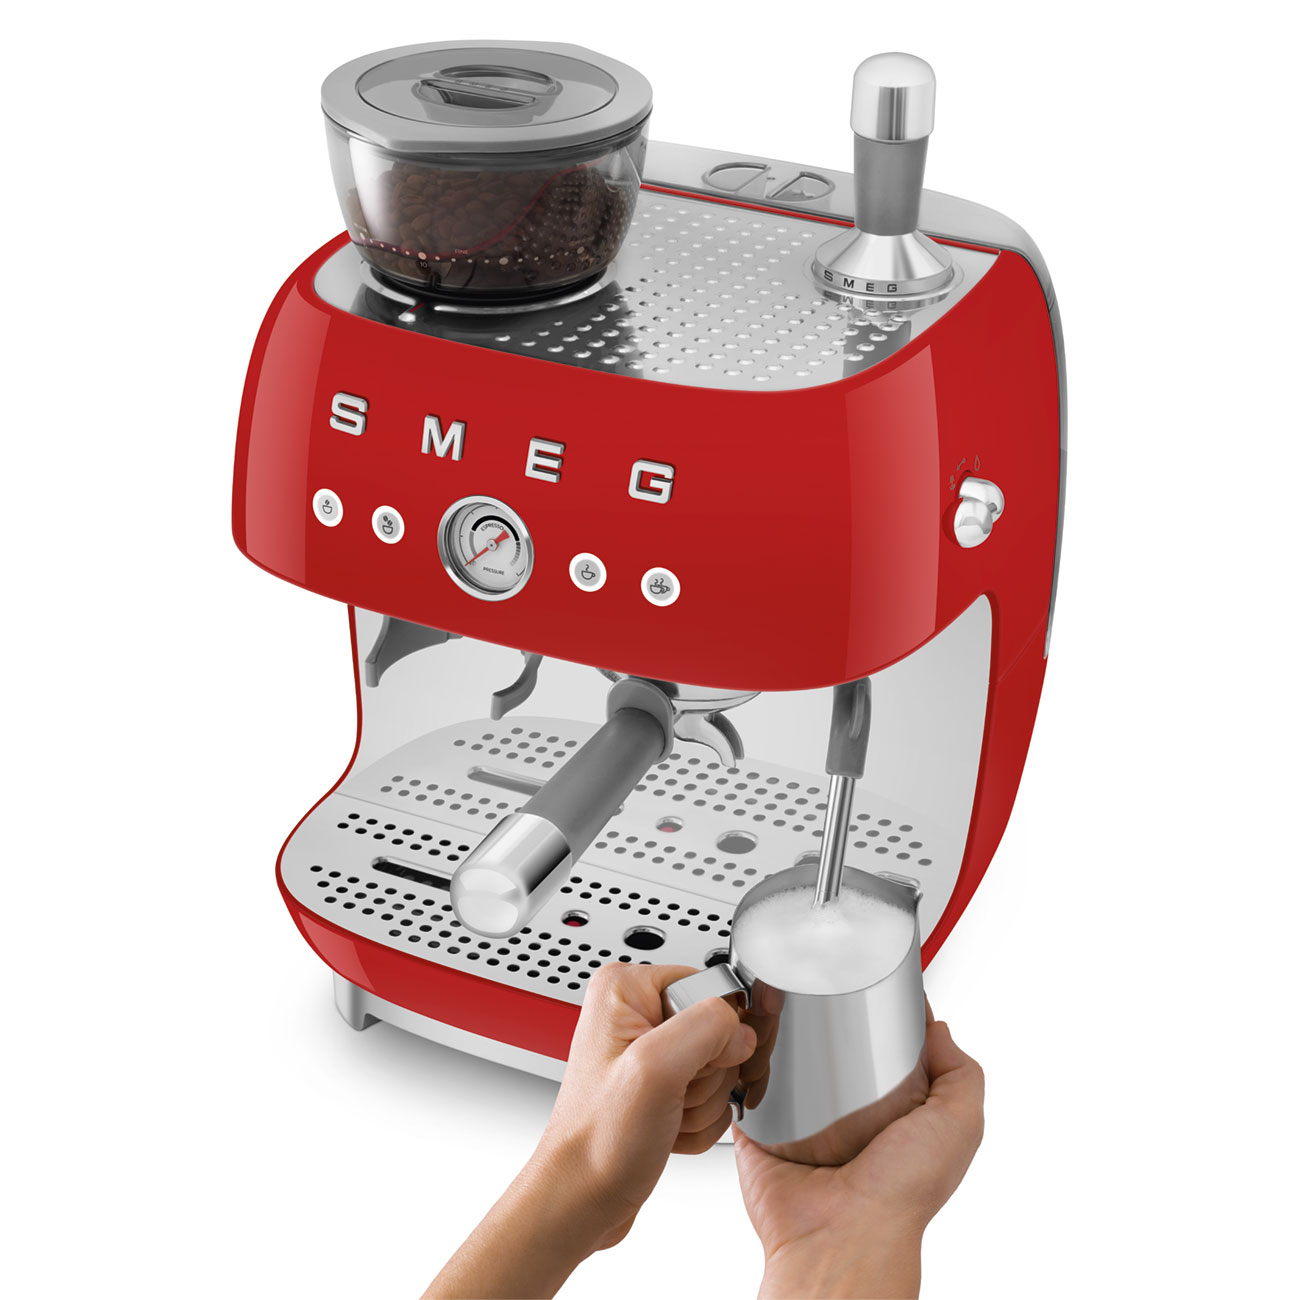 Smeg Espressomaschine mit Siebträger und Kaffeemühle – Lucaffé Shop